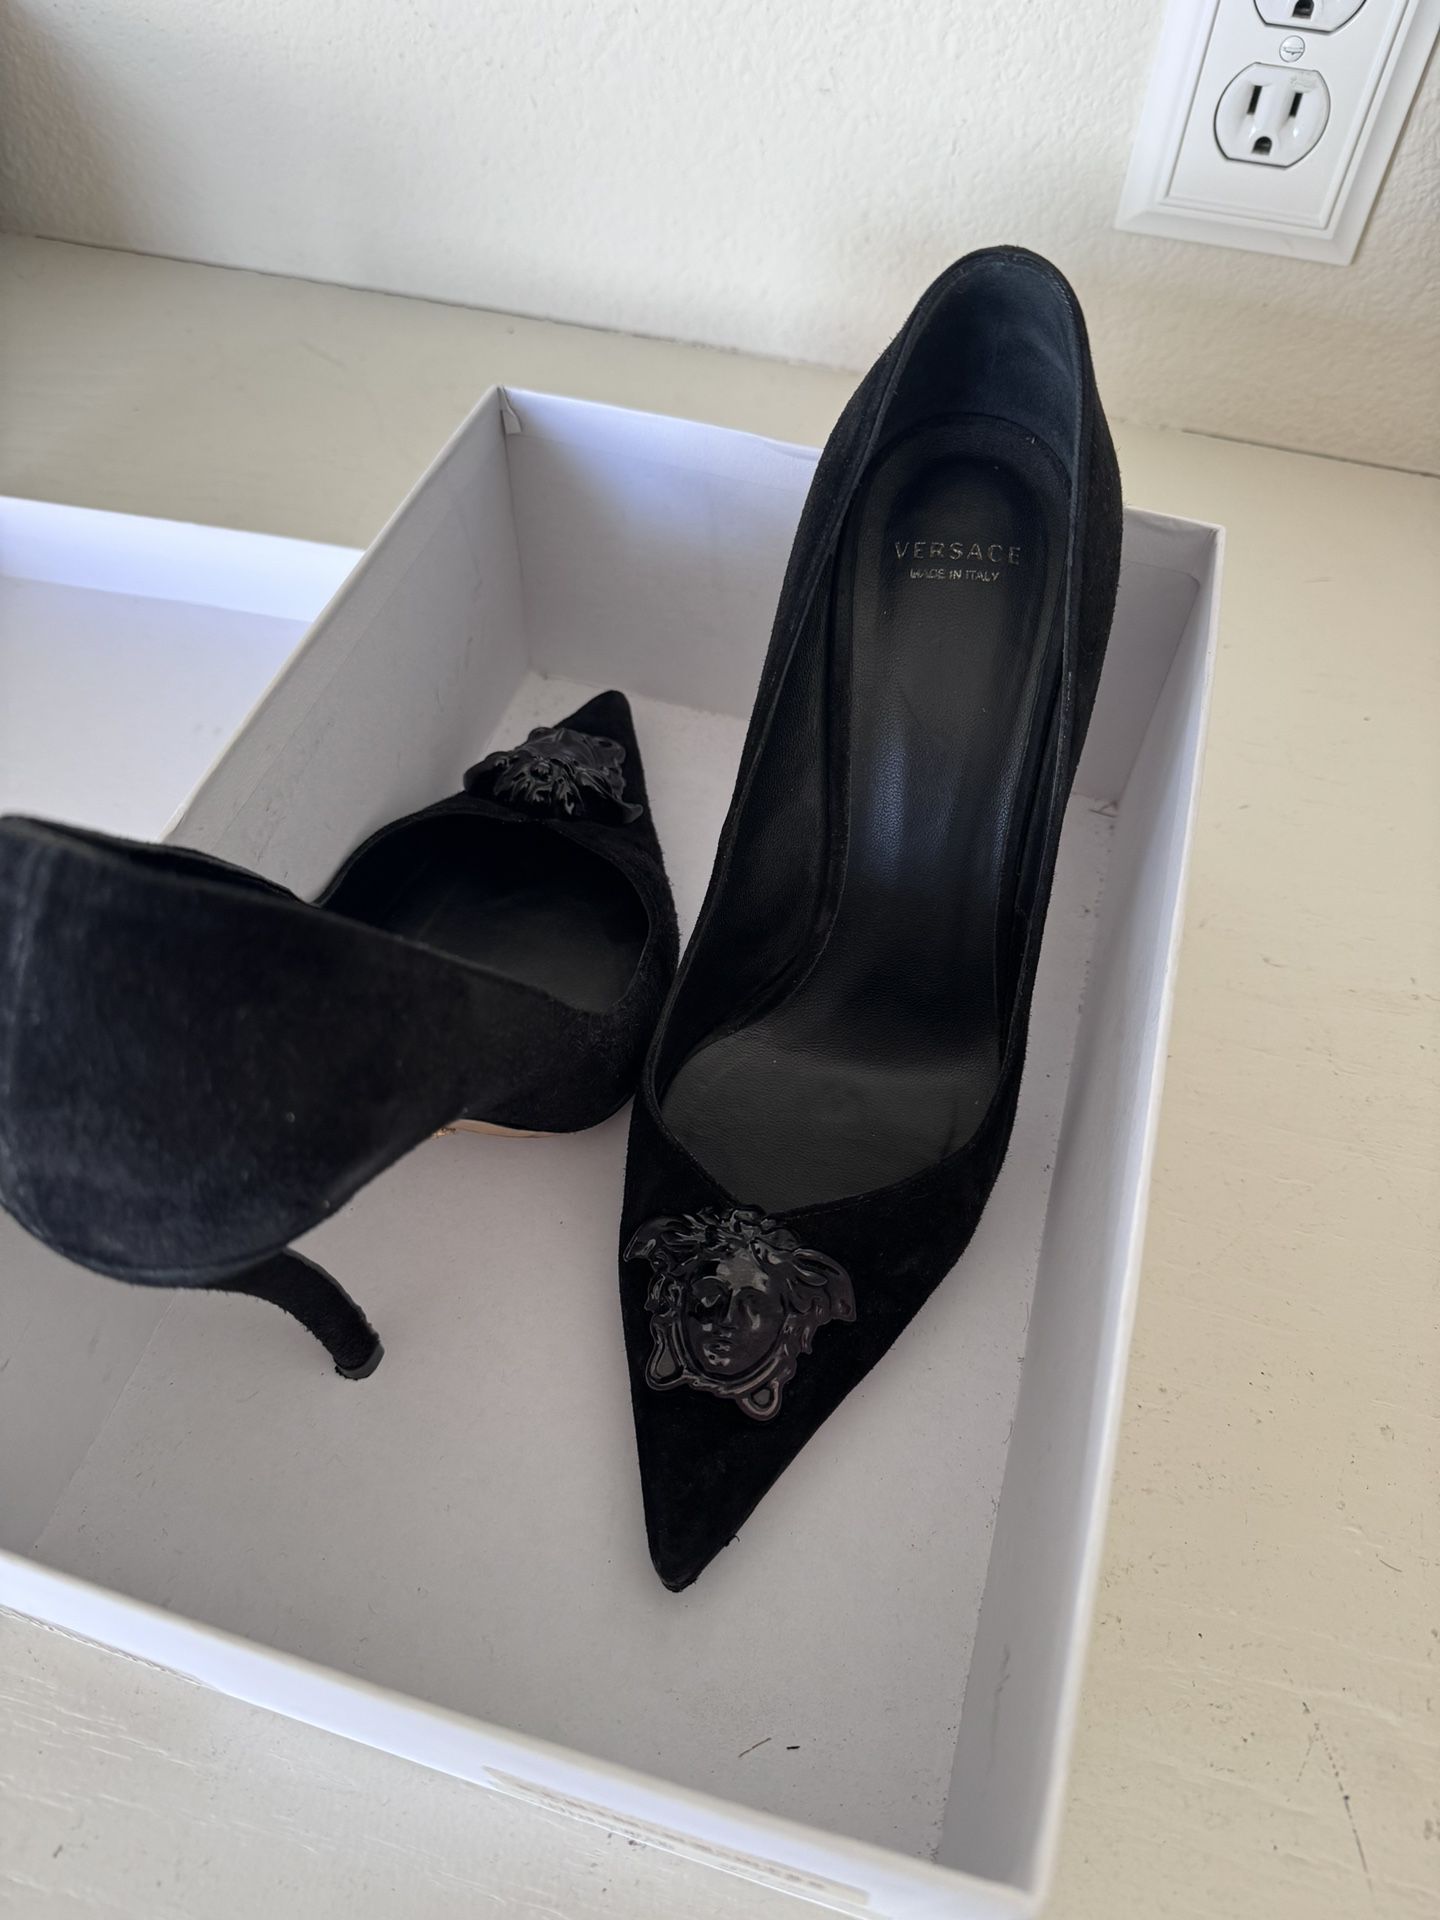 Versace Women’s Pumps (heels)